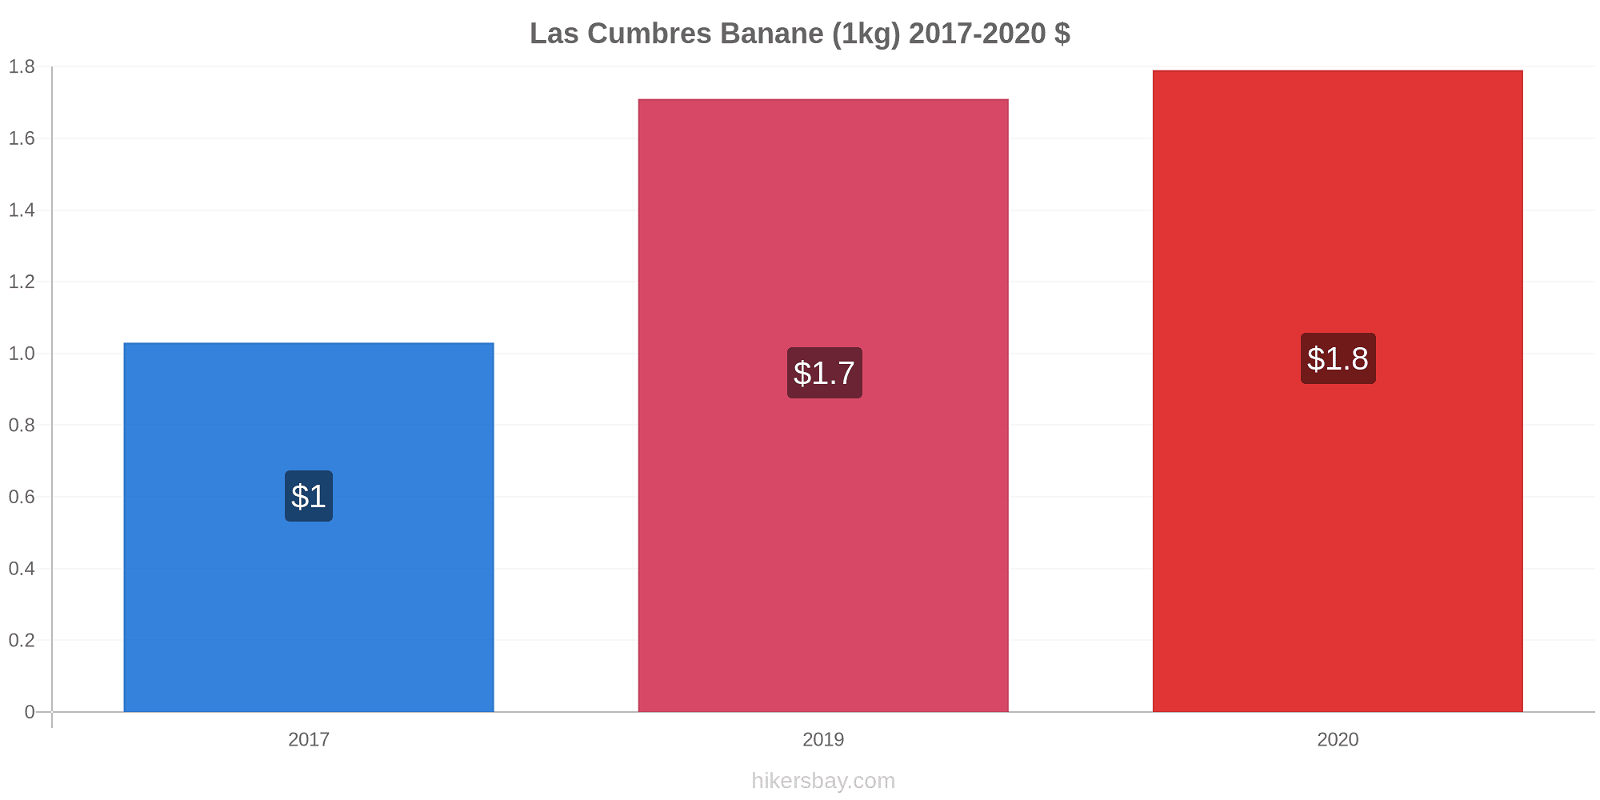 Las Cumbres variazioni di prezzo Banana (1kg) hikersbay.com